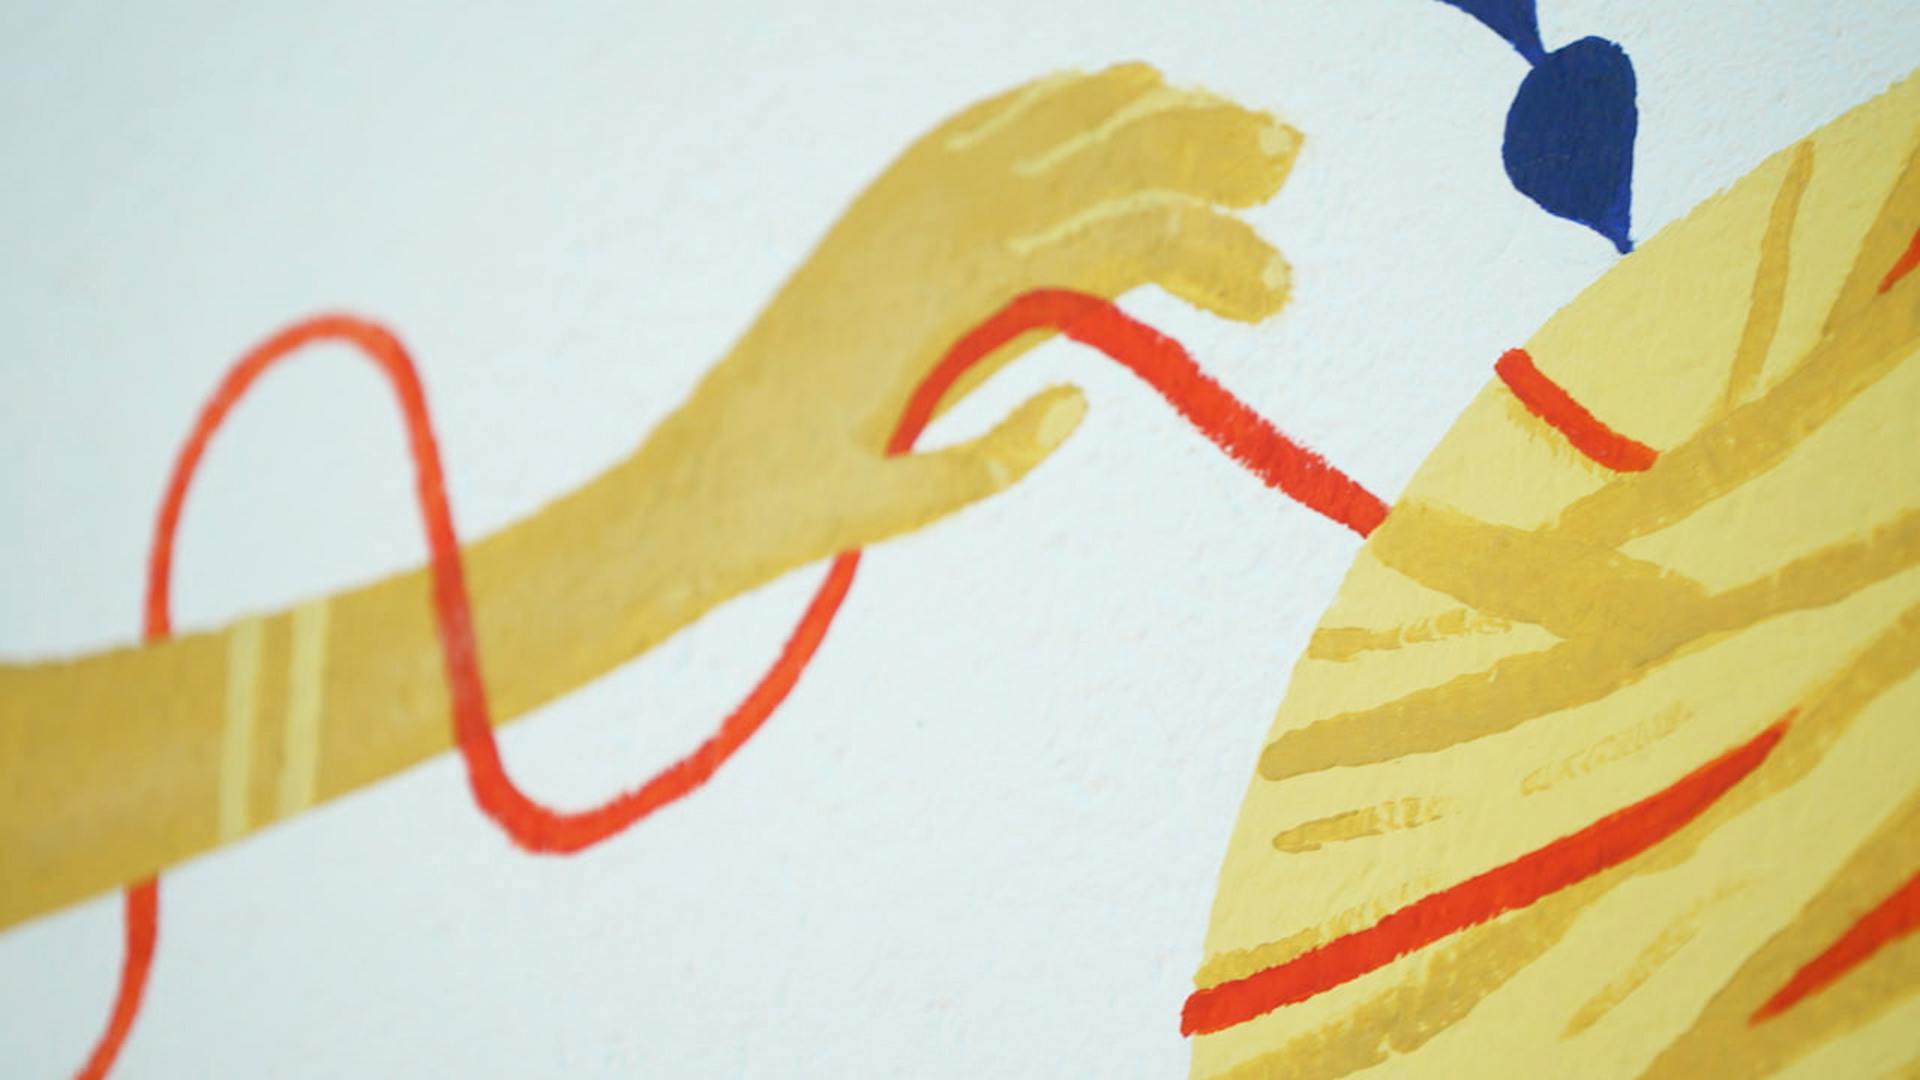 Détails de la fresque "Tisser du lien", zoom sur un fil de lin enroulé autour d'une main, symbole du lien entre les habitants de la ville de Loudéac.